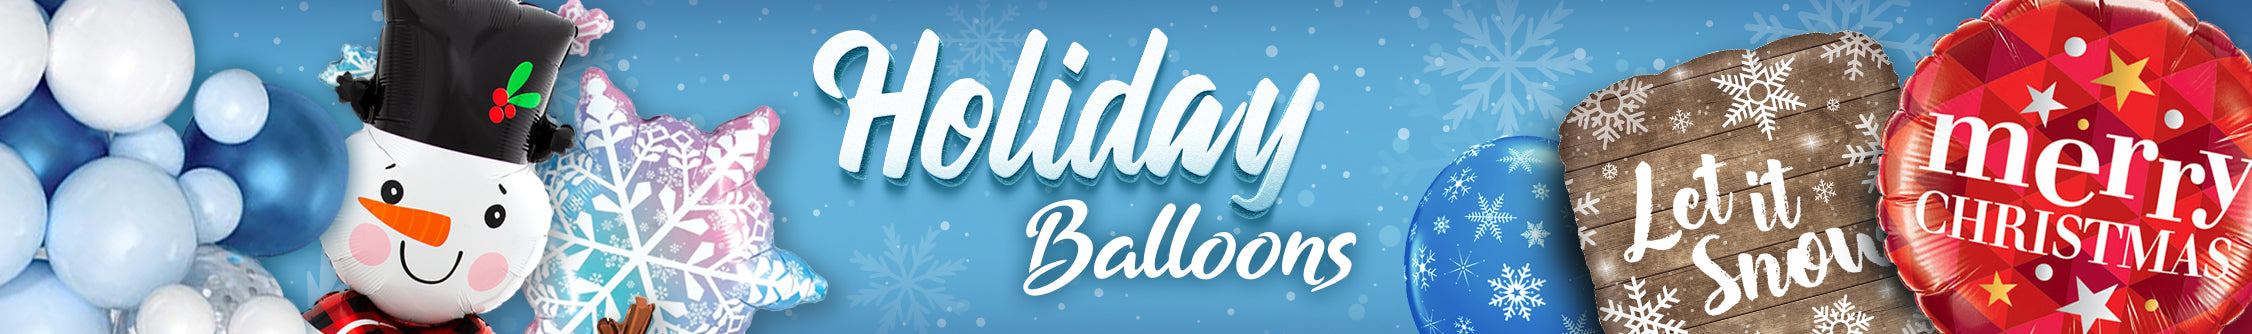 Header-Holiday-Balloons.jpg__PID:aa4af0e5-5d80-4606-a4d9-4b156a906b5a